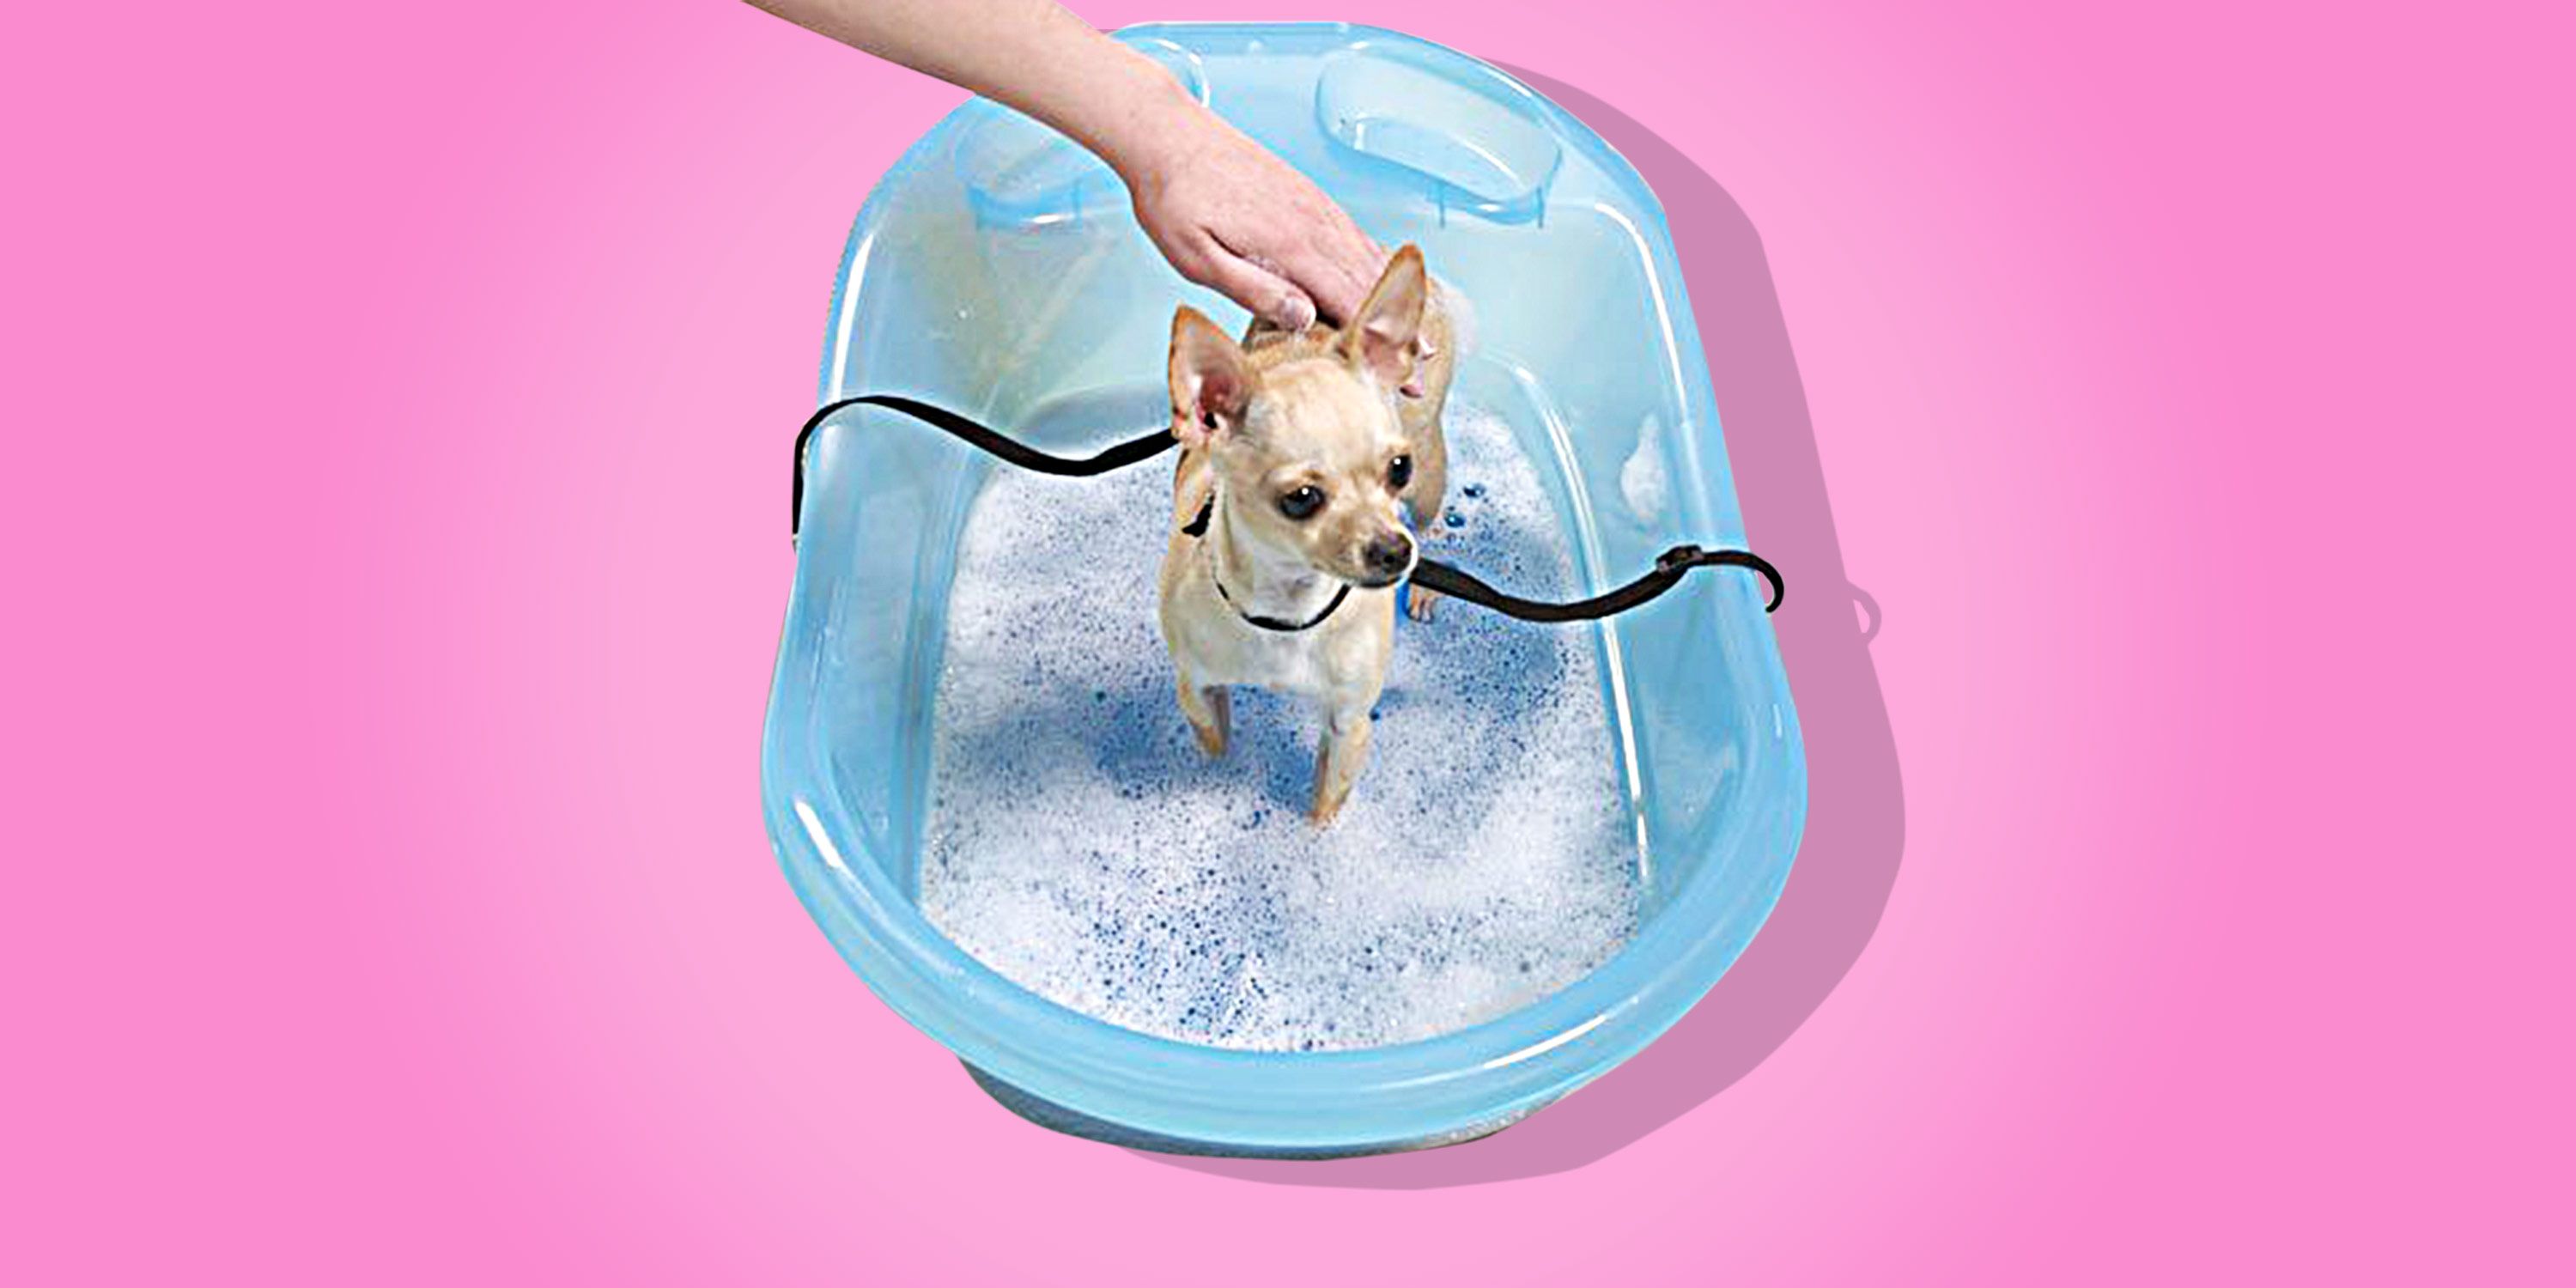 The Best Dog Bathtub Pet Gear Review, Washing Dog In Bathtub